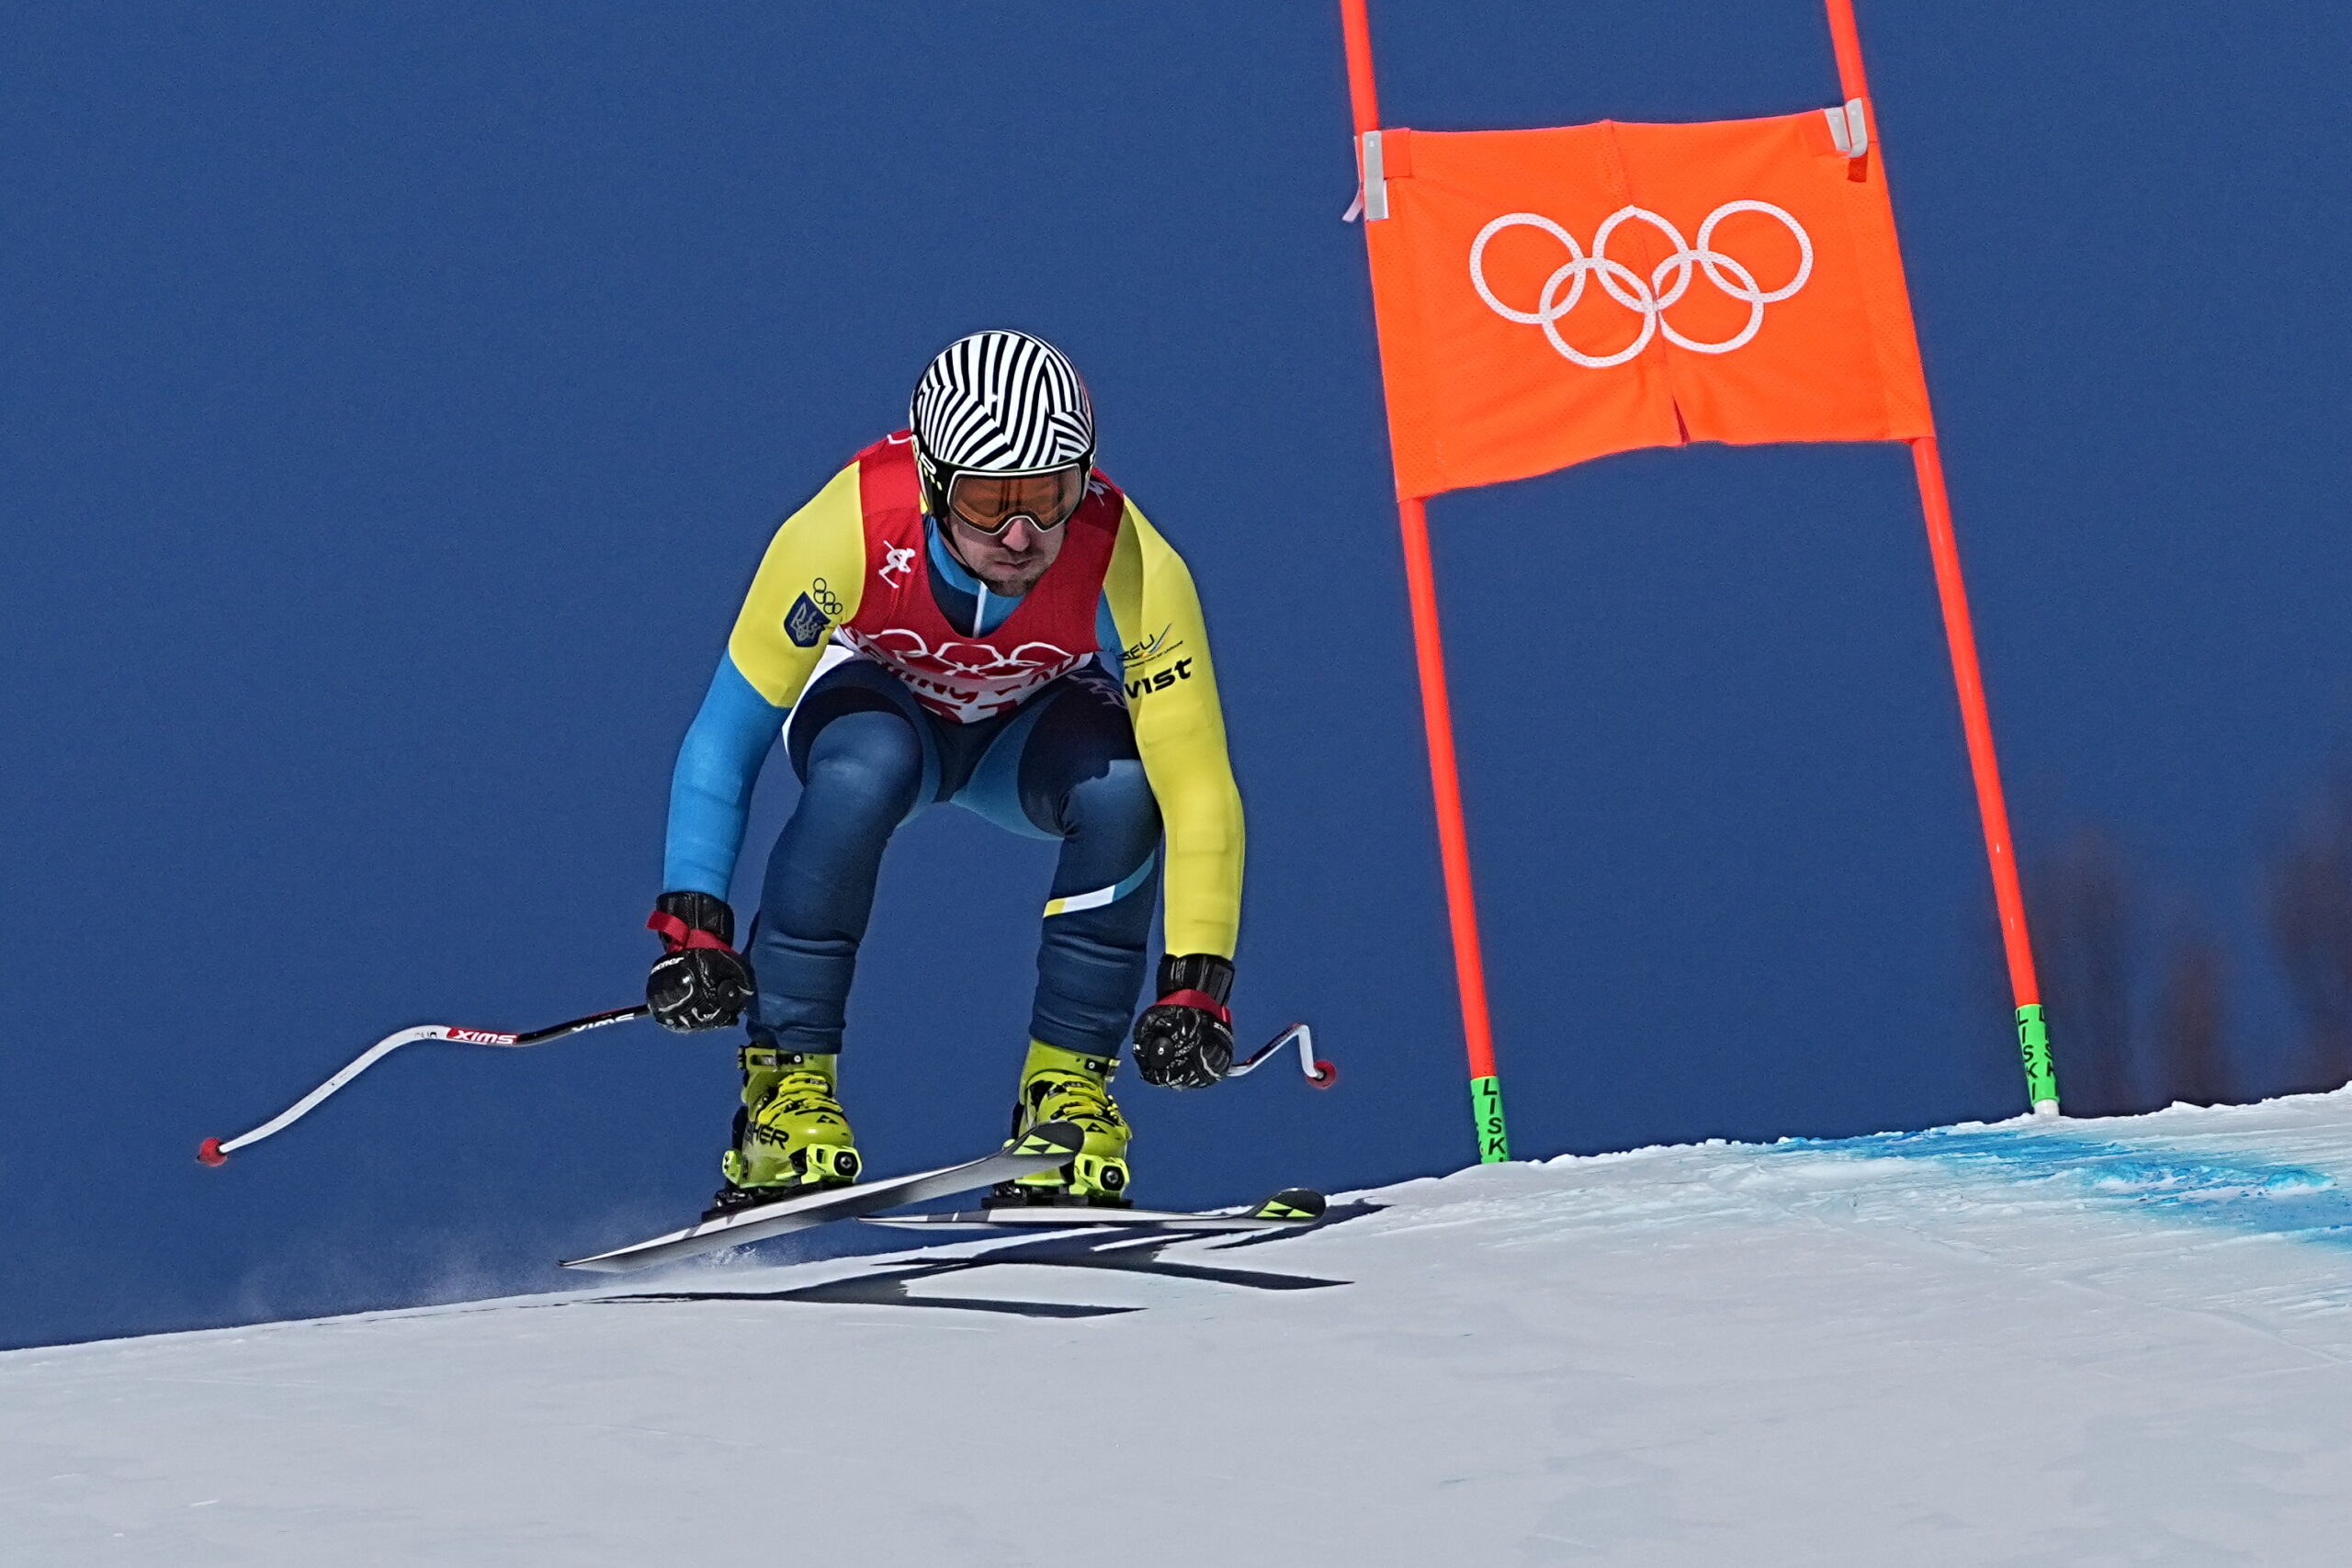 Die ukrainischen Athleten sollen nach einer Empfehlung Kiews die russischen Sportler bei den Olympischen Winterspielen meiden.